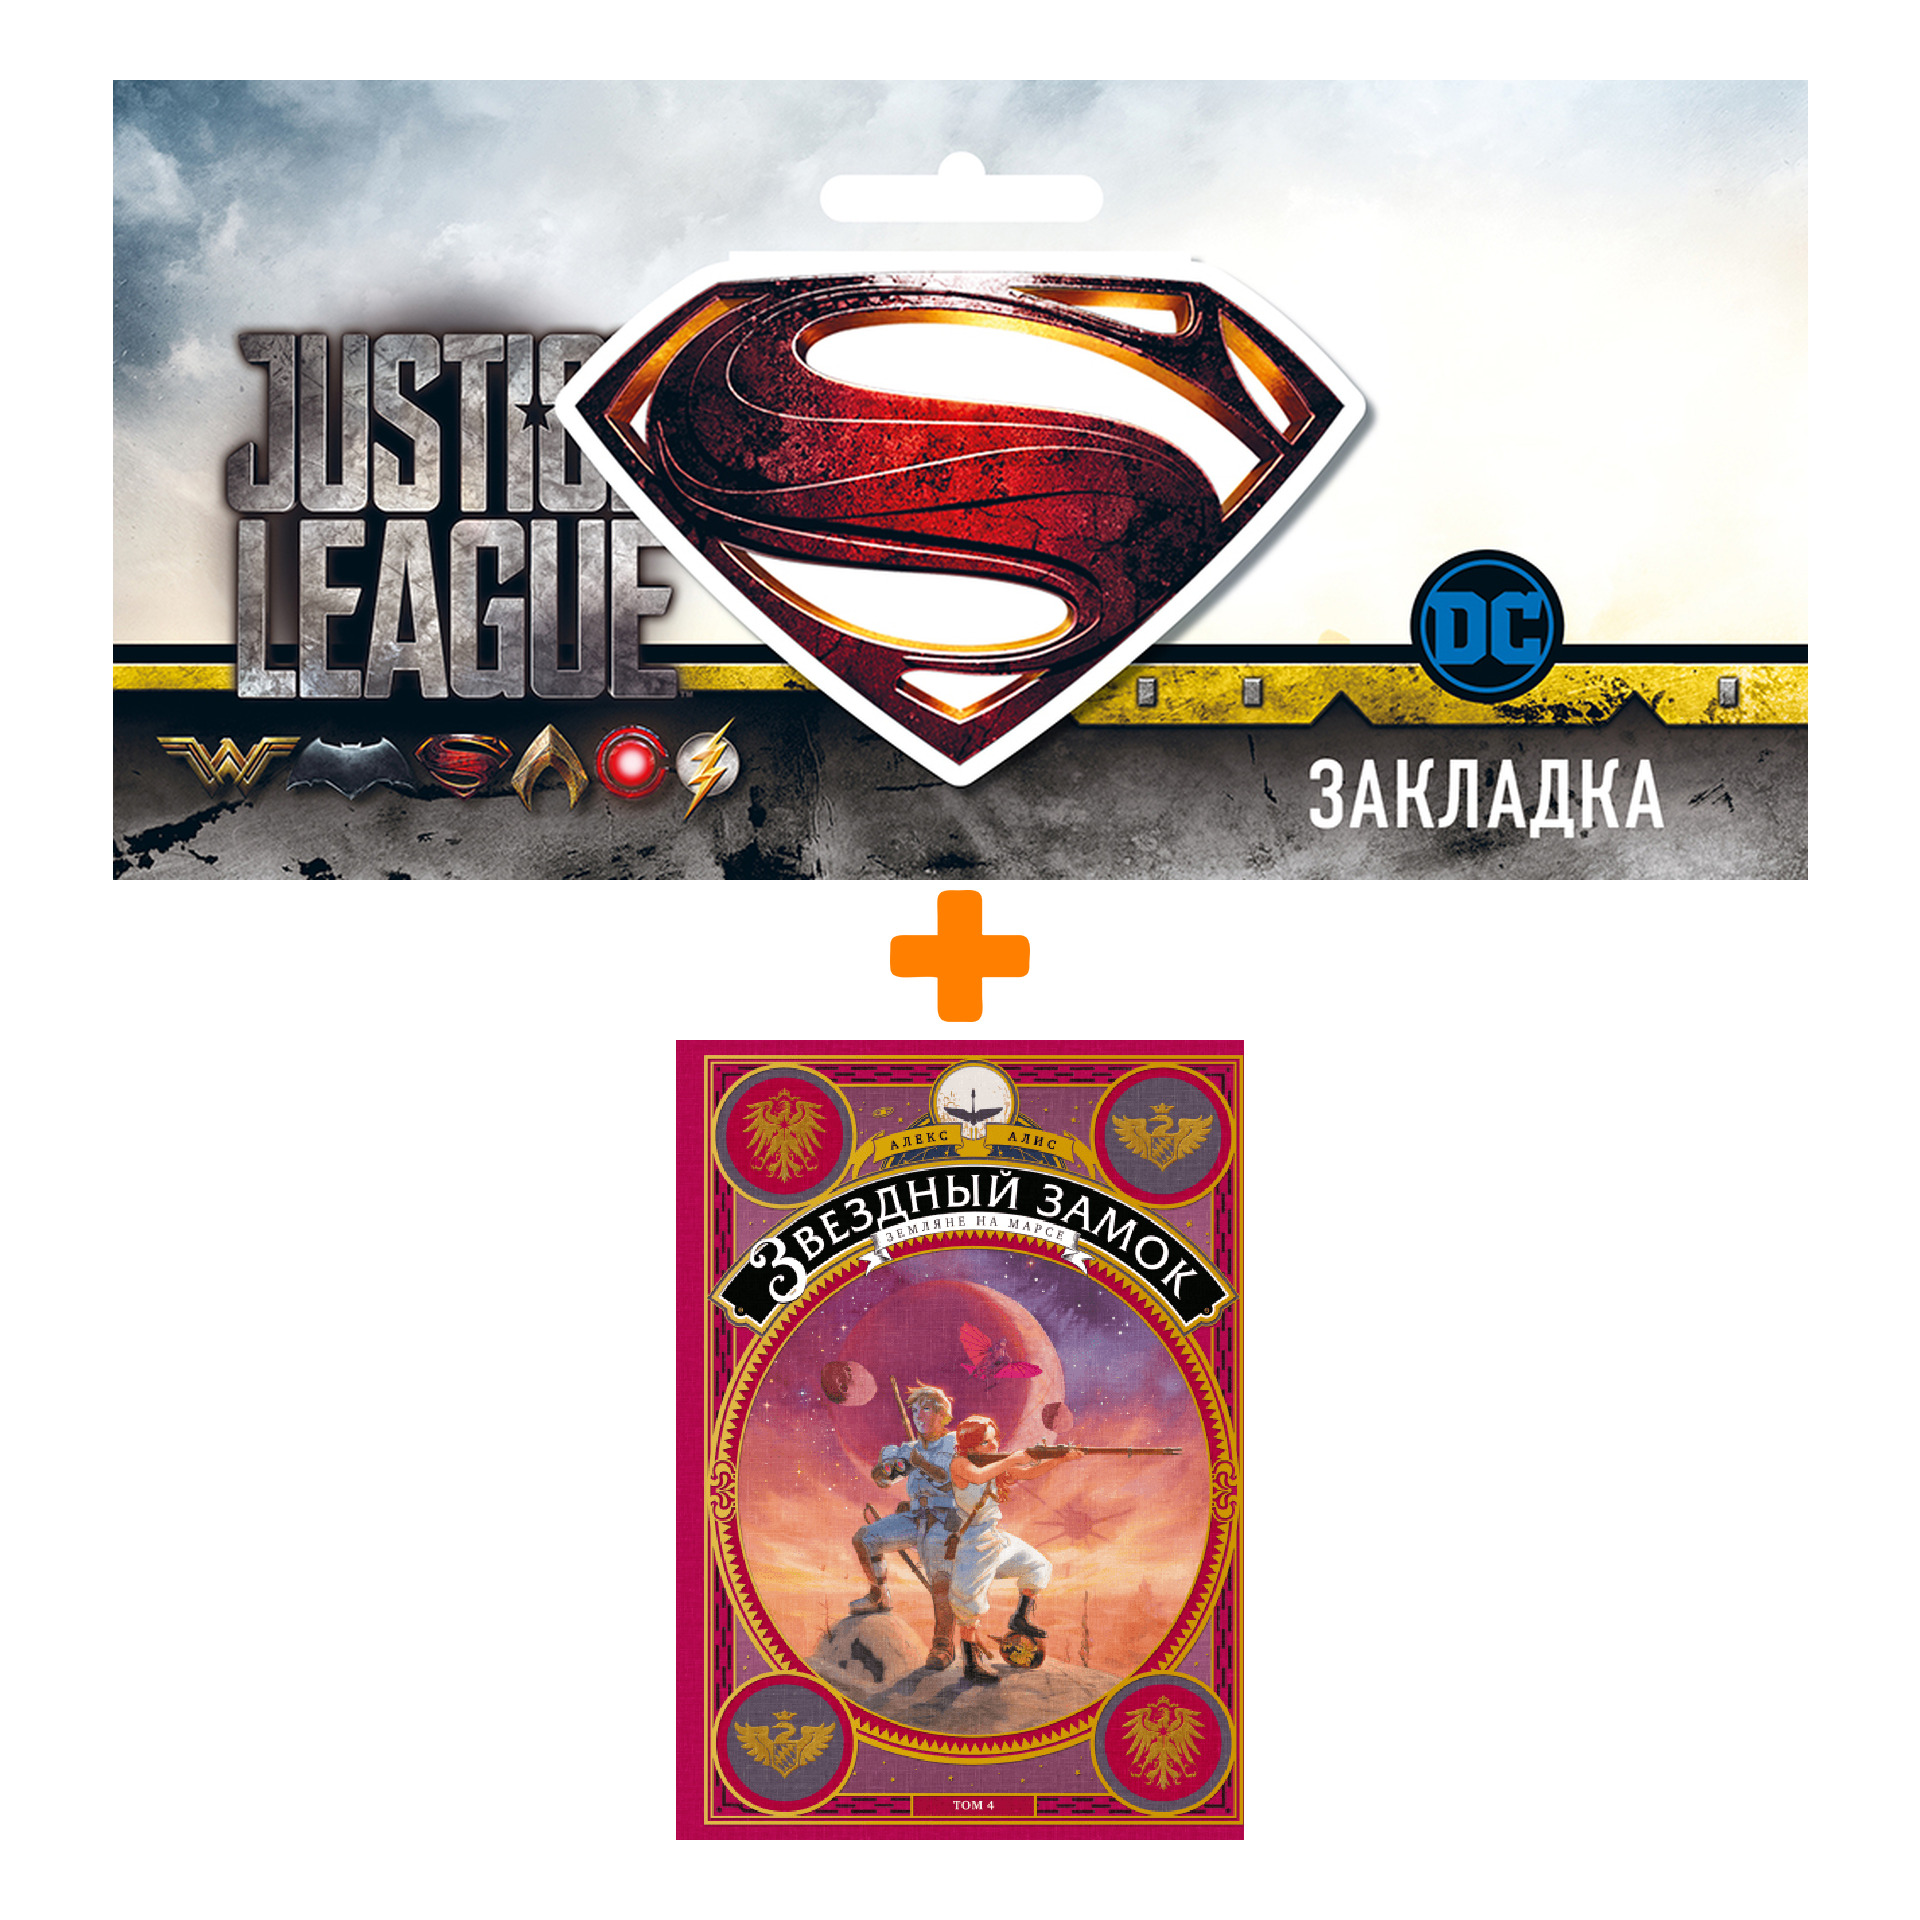 Набор Комикс Звёздный замок Земляне на Марсе Том 4 + Закладка DC Justice League Superman магнитная